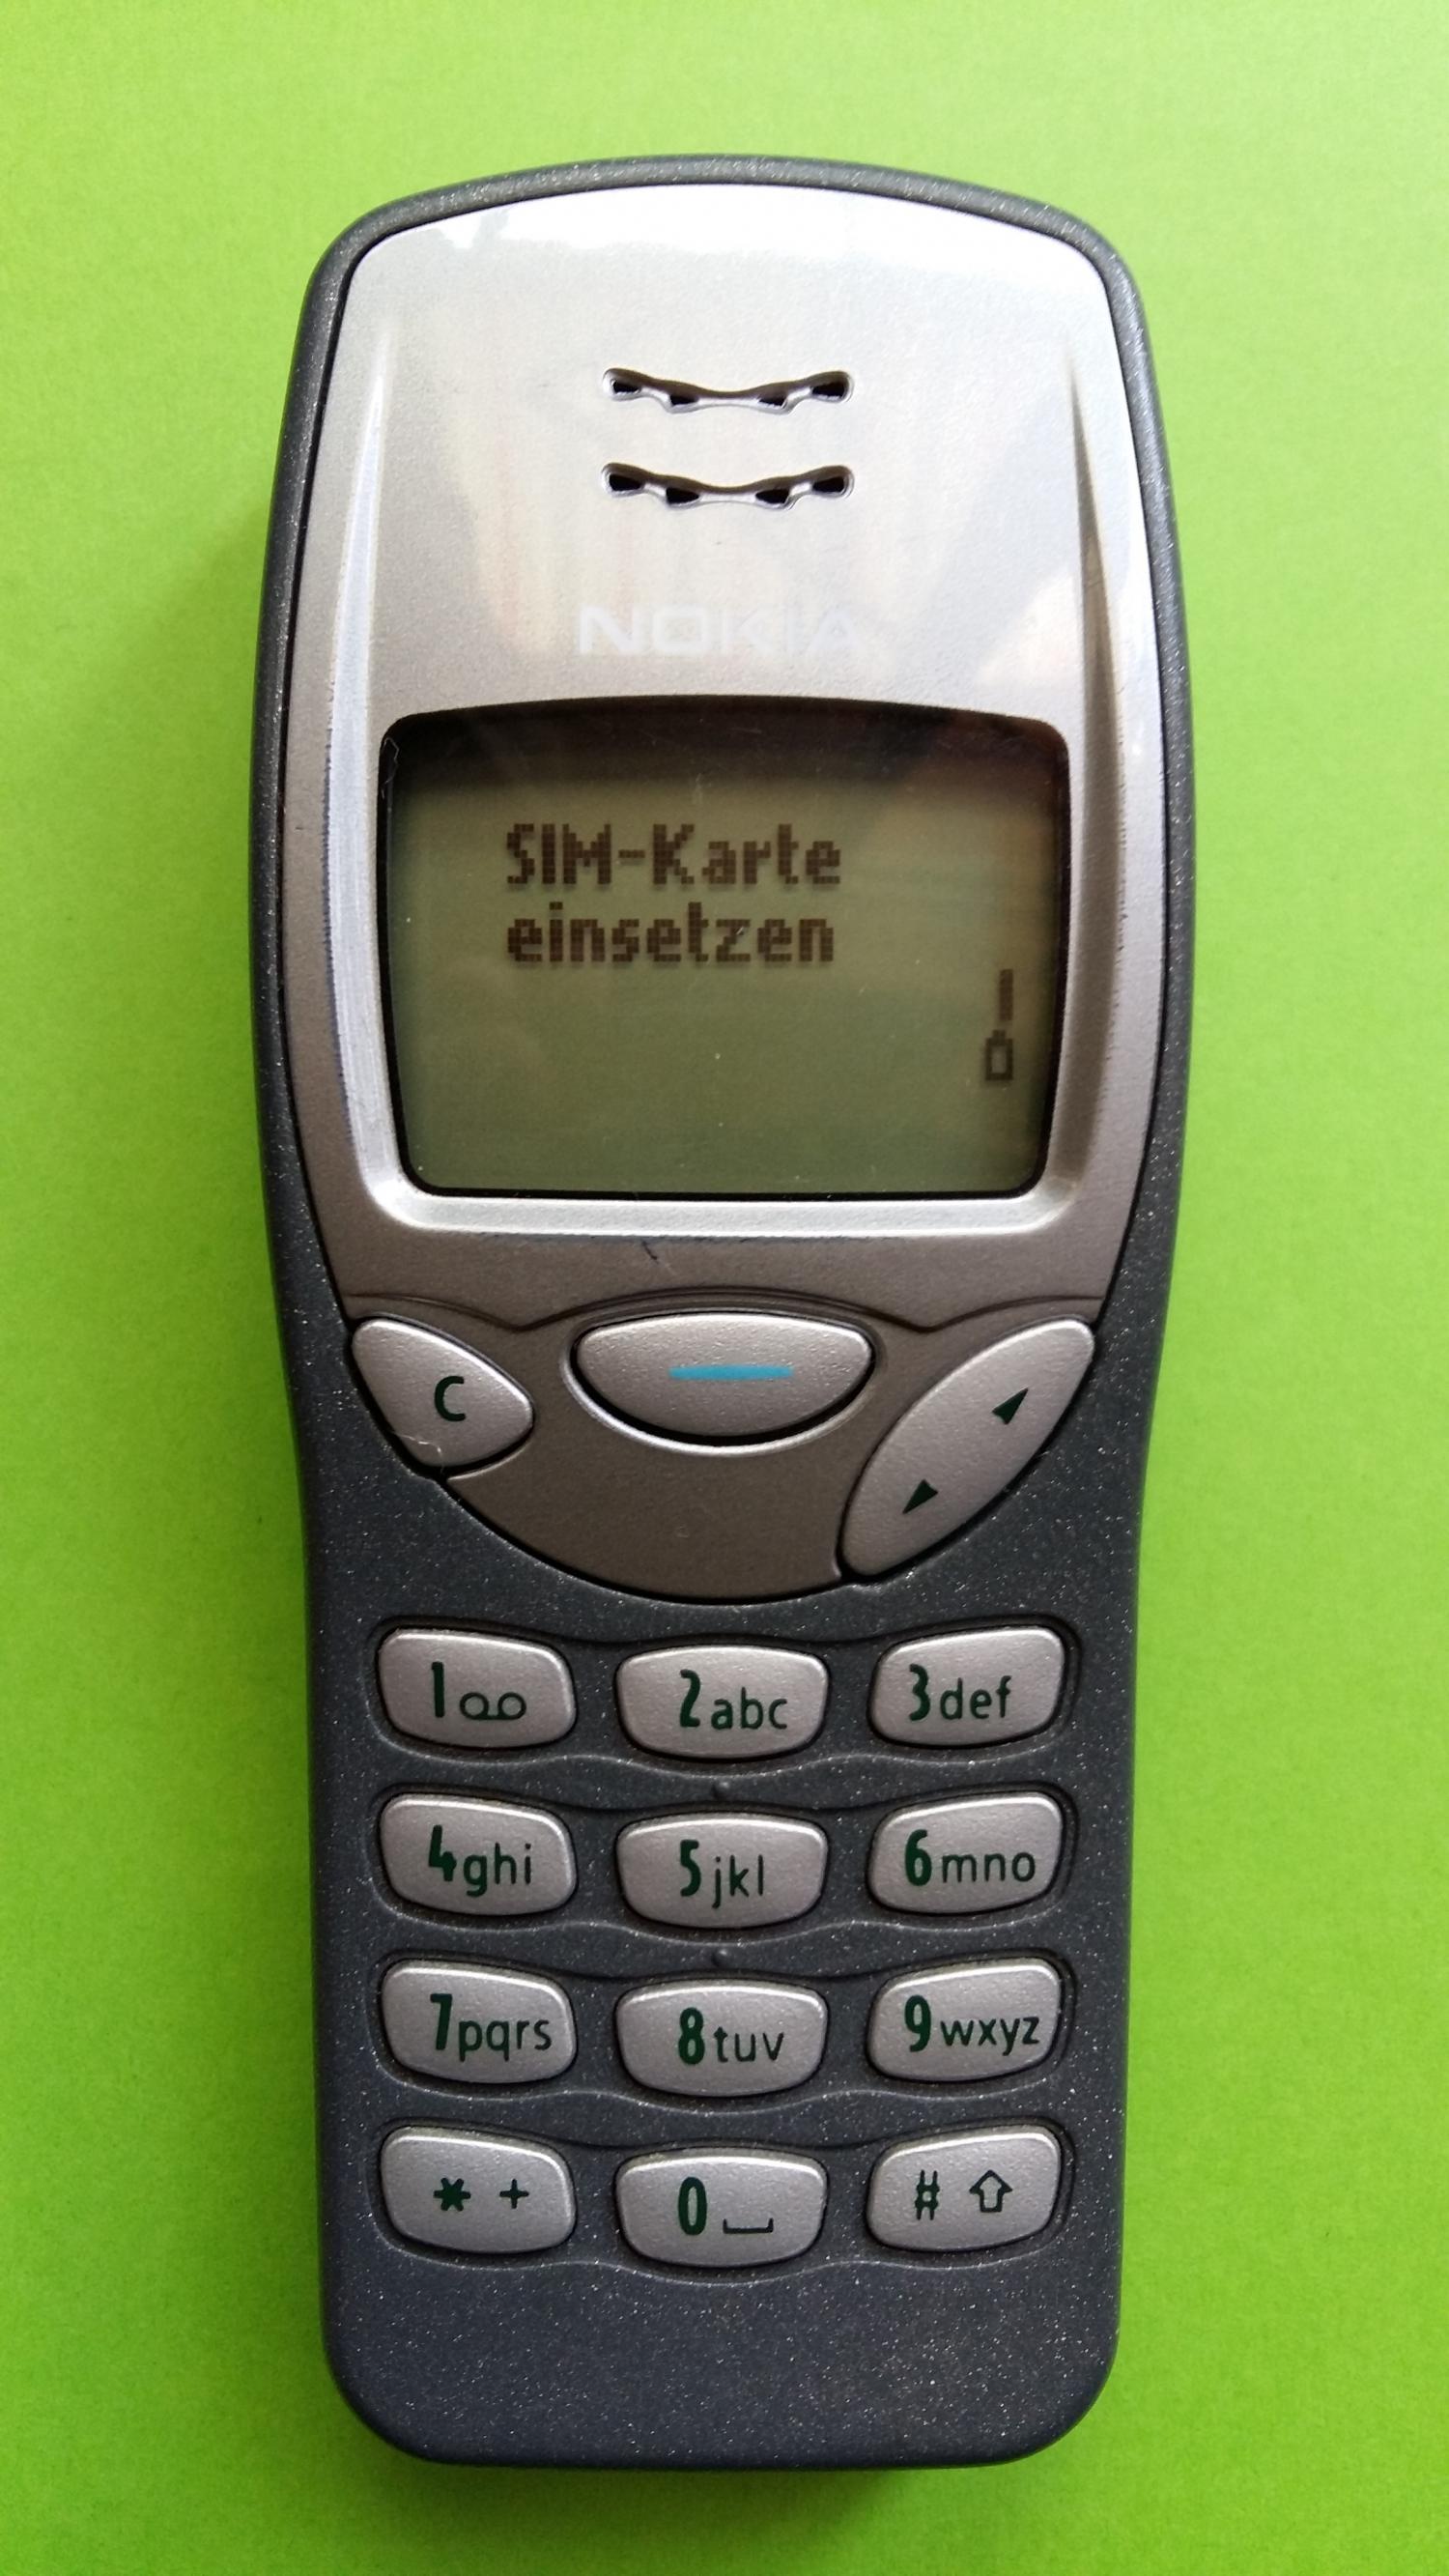 image-7305588-Nokia 3210 (6)1.jpg